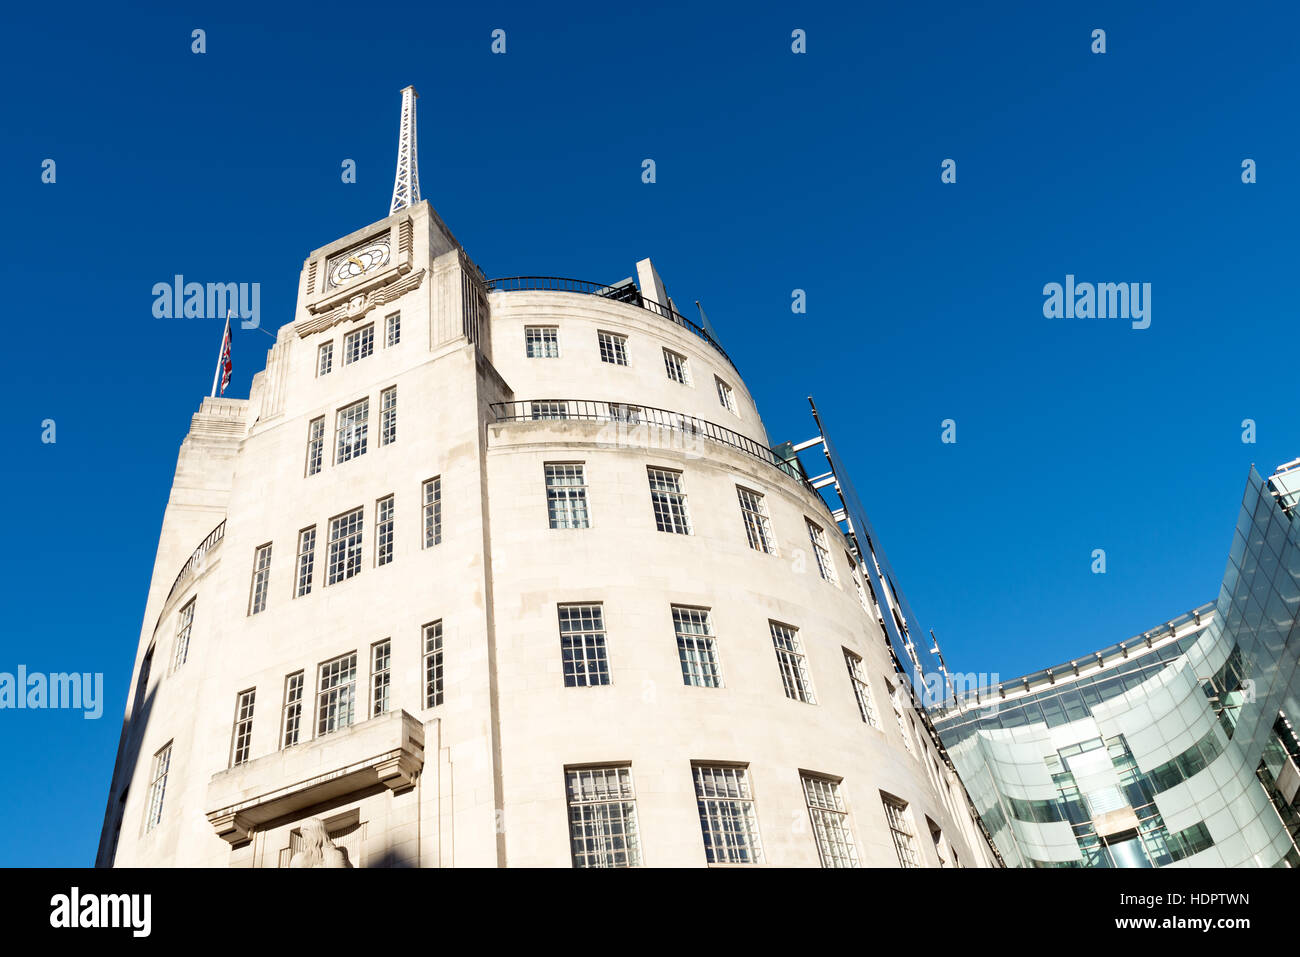 BBC Broadcasting House, London, England, UK Stock Photo